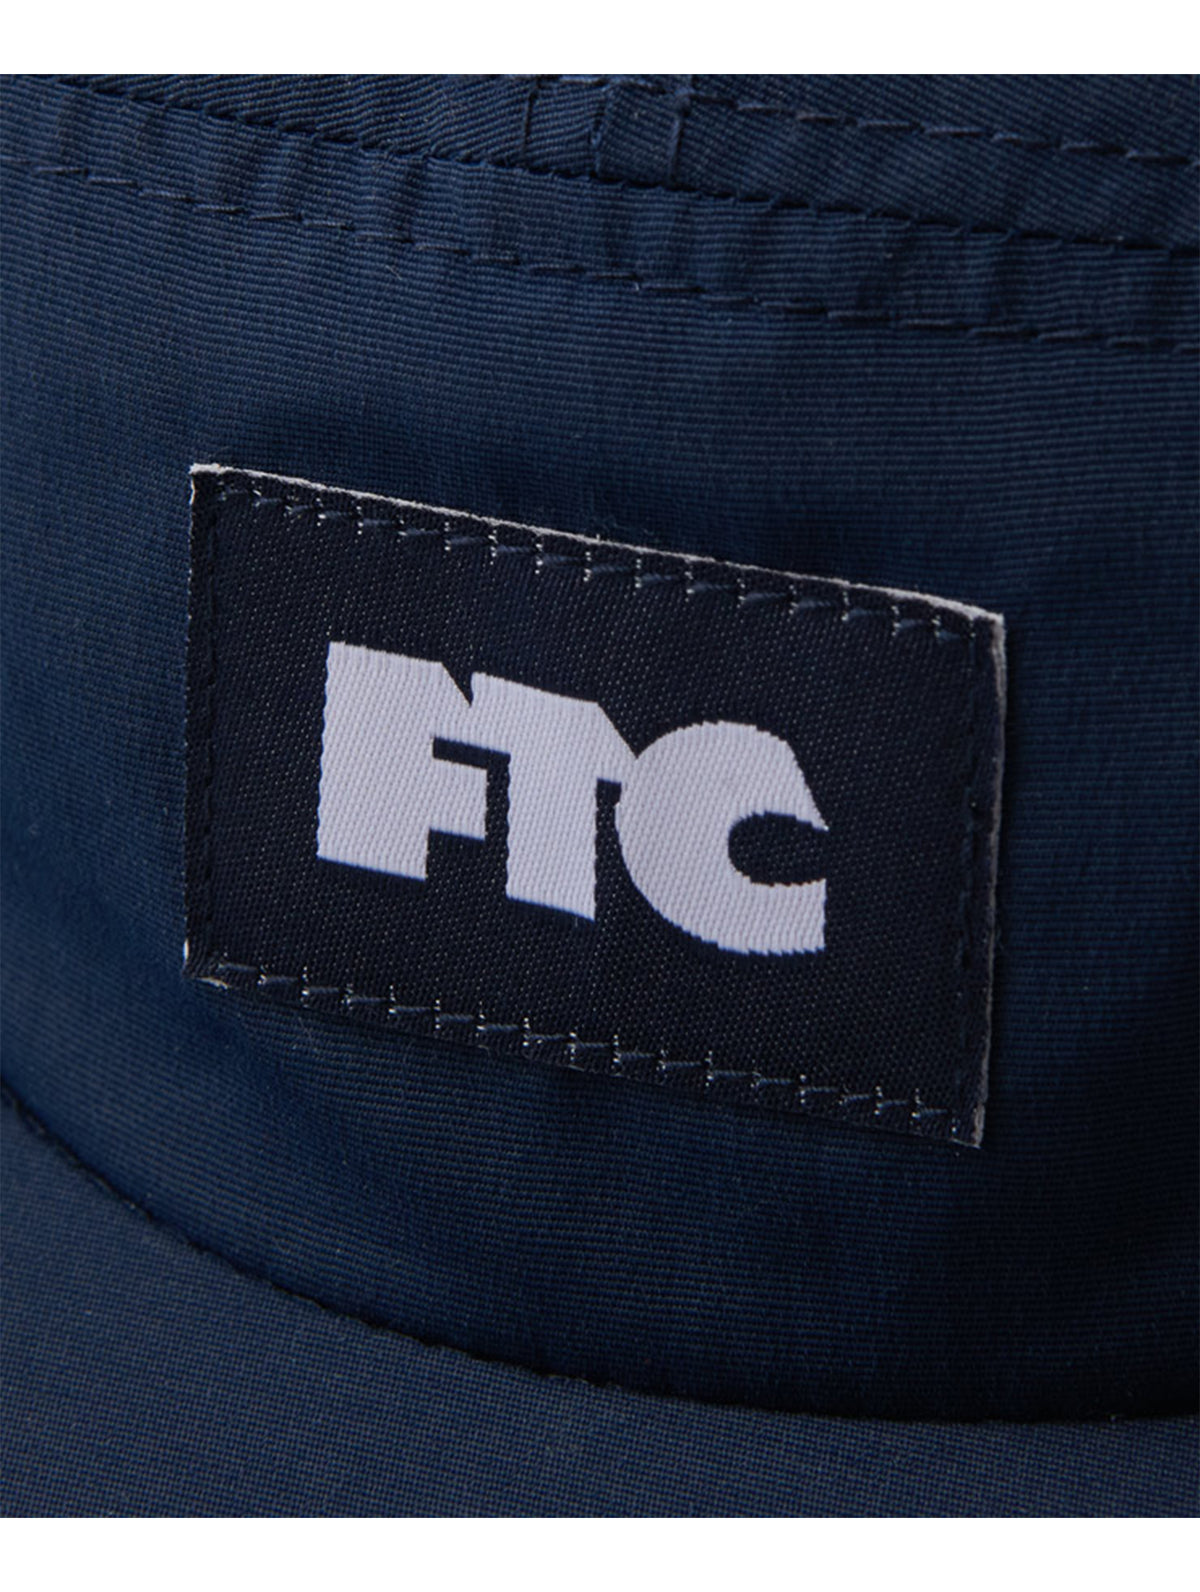 FTC CURVE CAMPER CAP